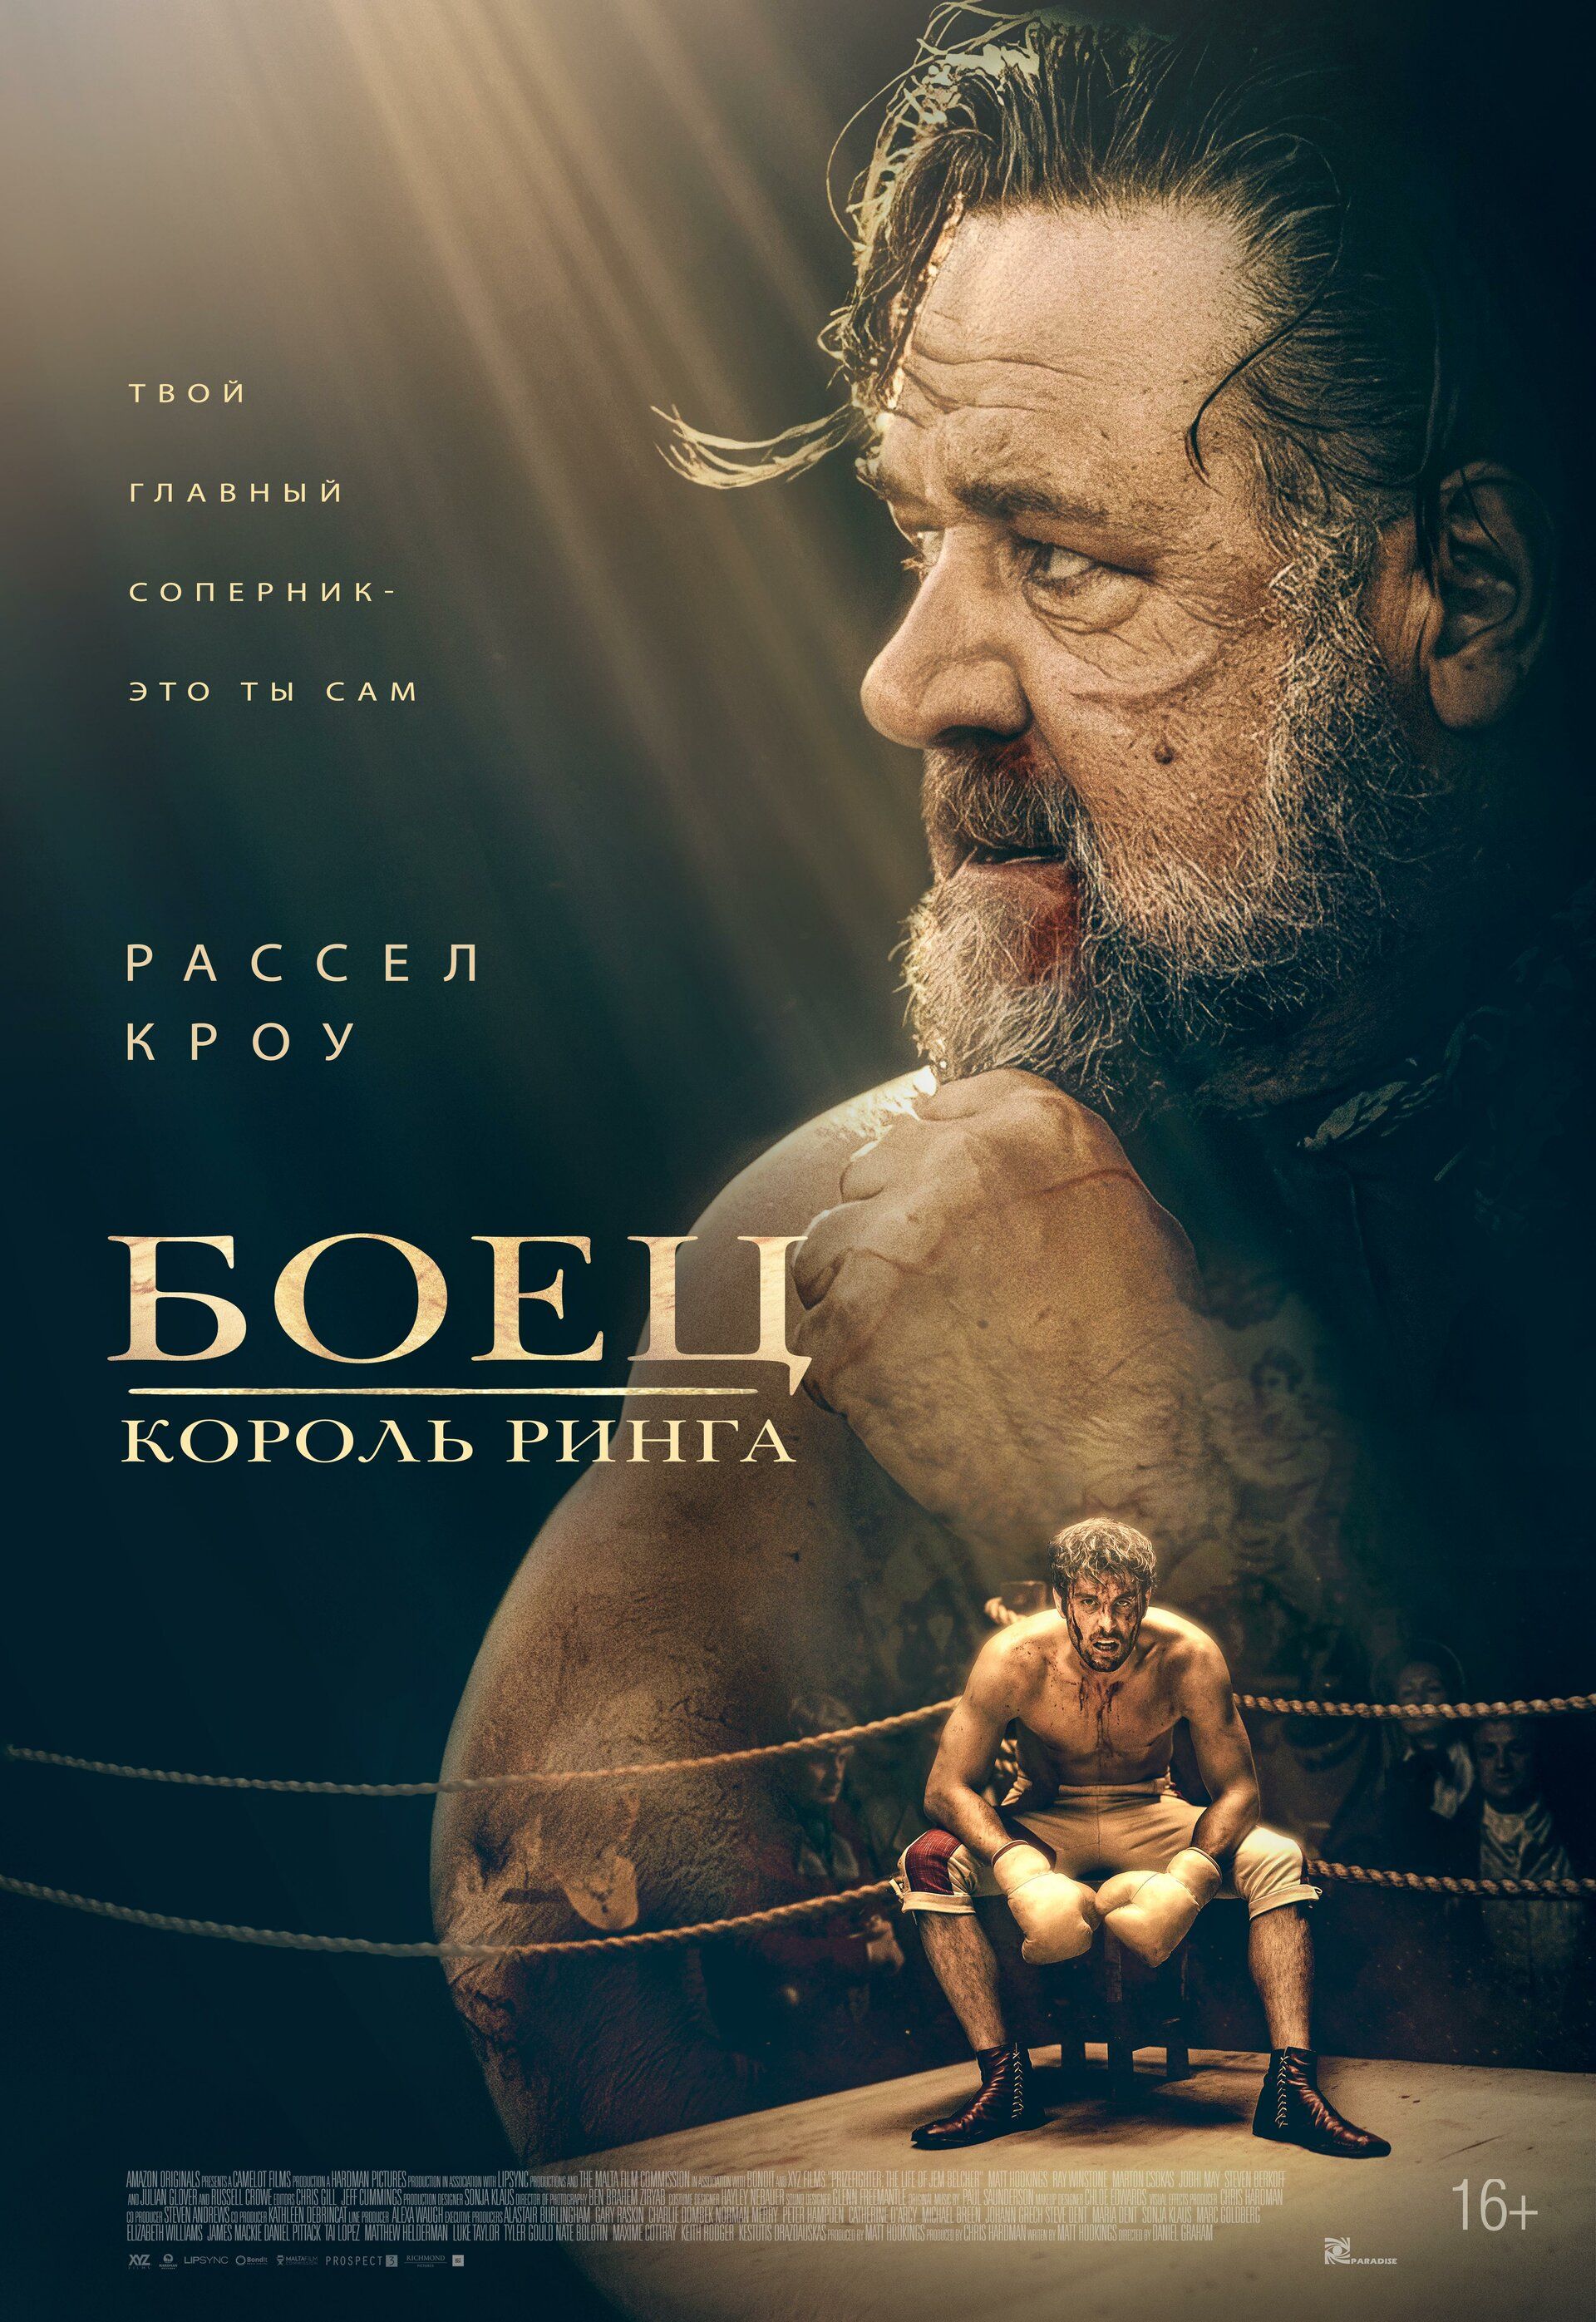 Постер к фильму Боец: Король ринга / Prizefighter: The Life of Jem Belcher (2022) BDRemux 1080p от селезень | D